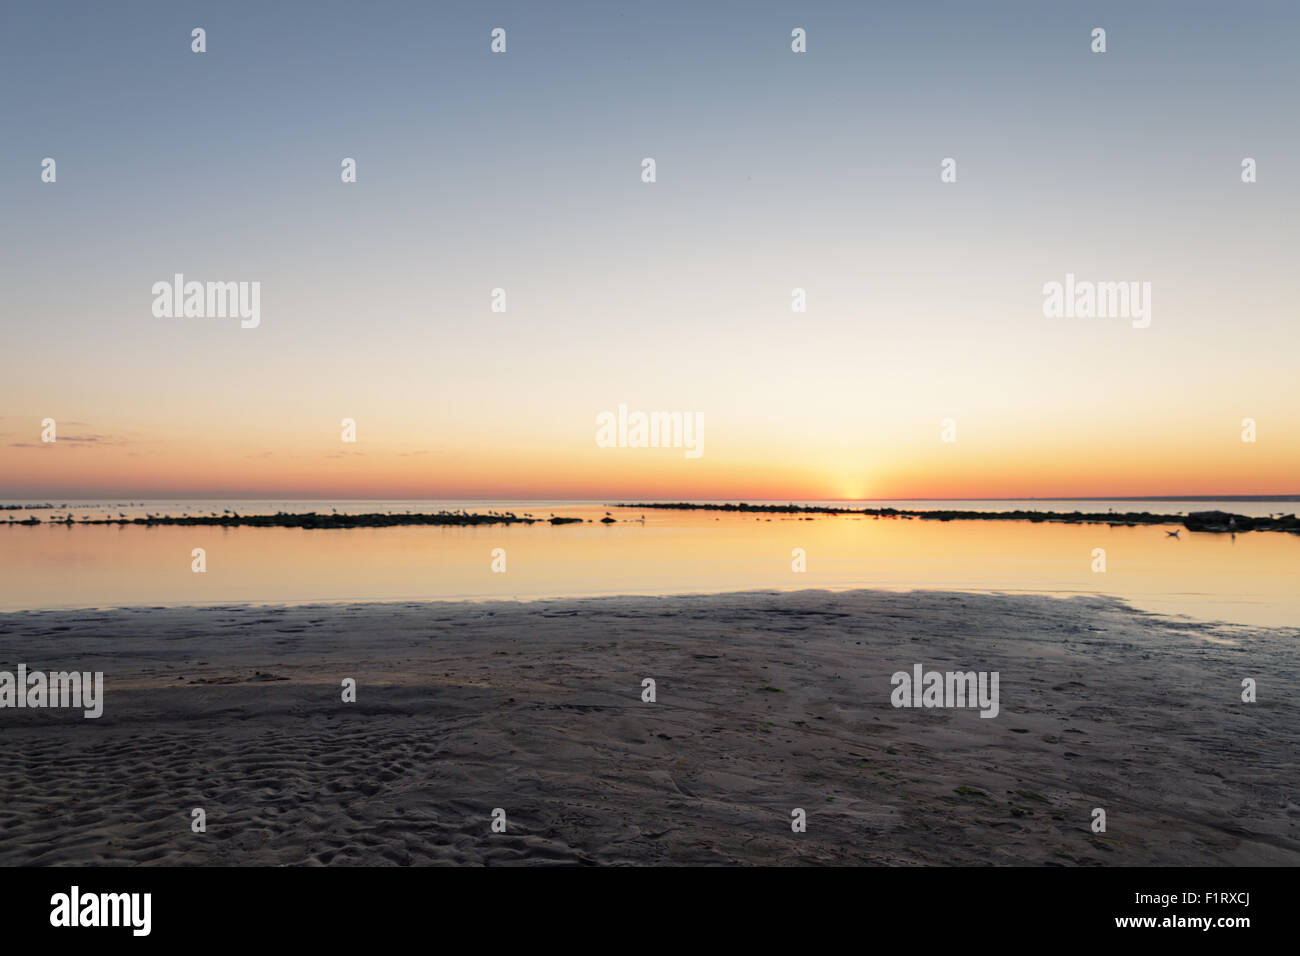 La playa del mar Báltico con gaviotas en Sunset Foto de stock